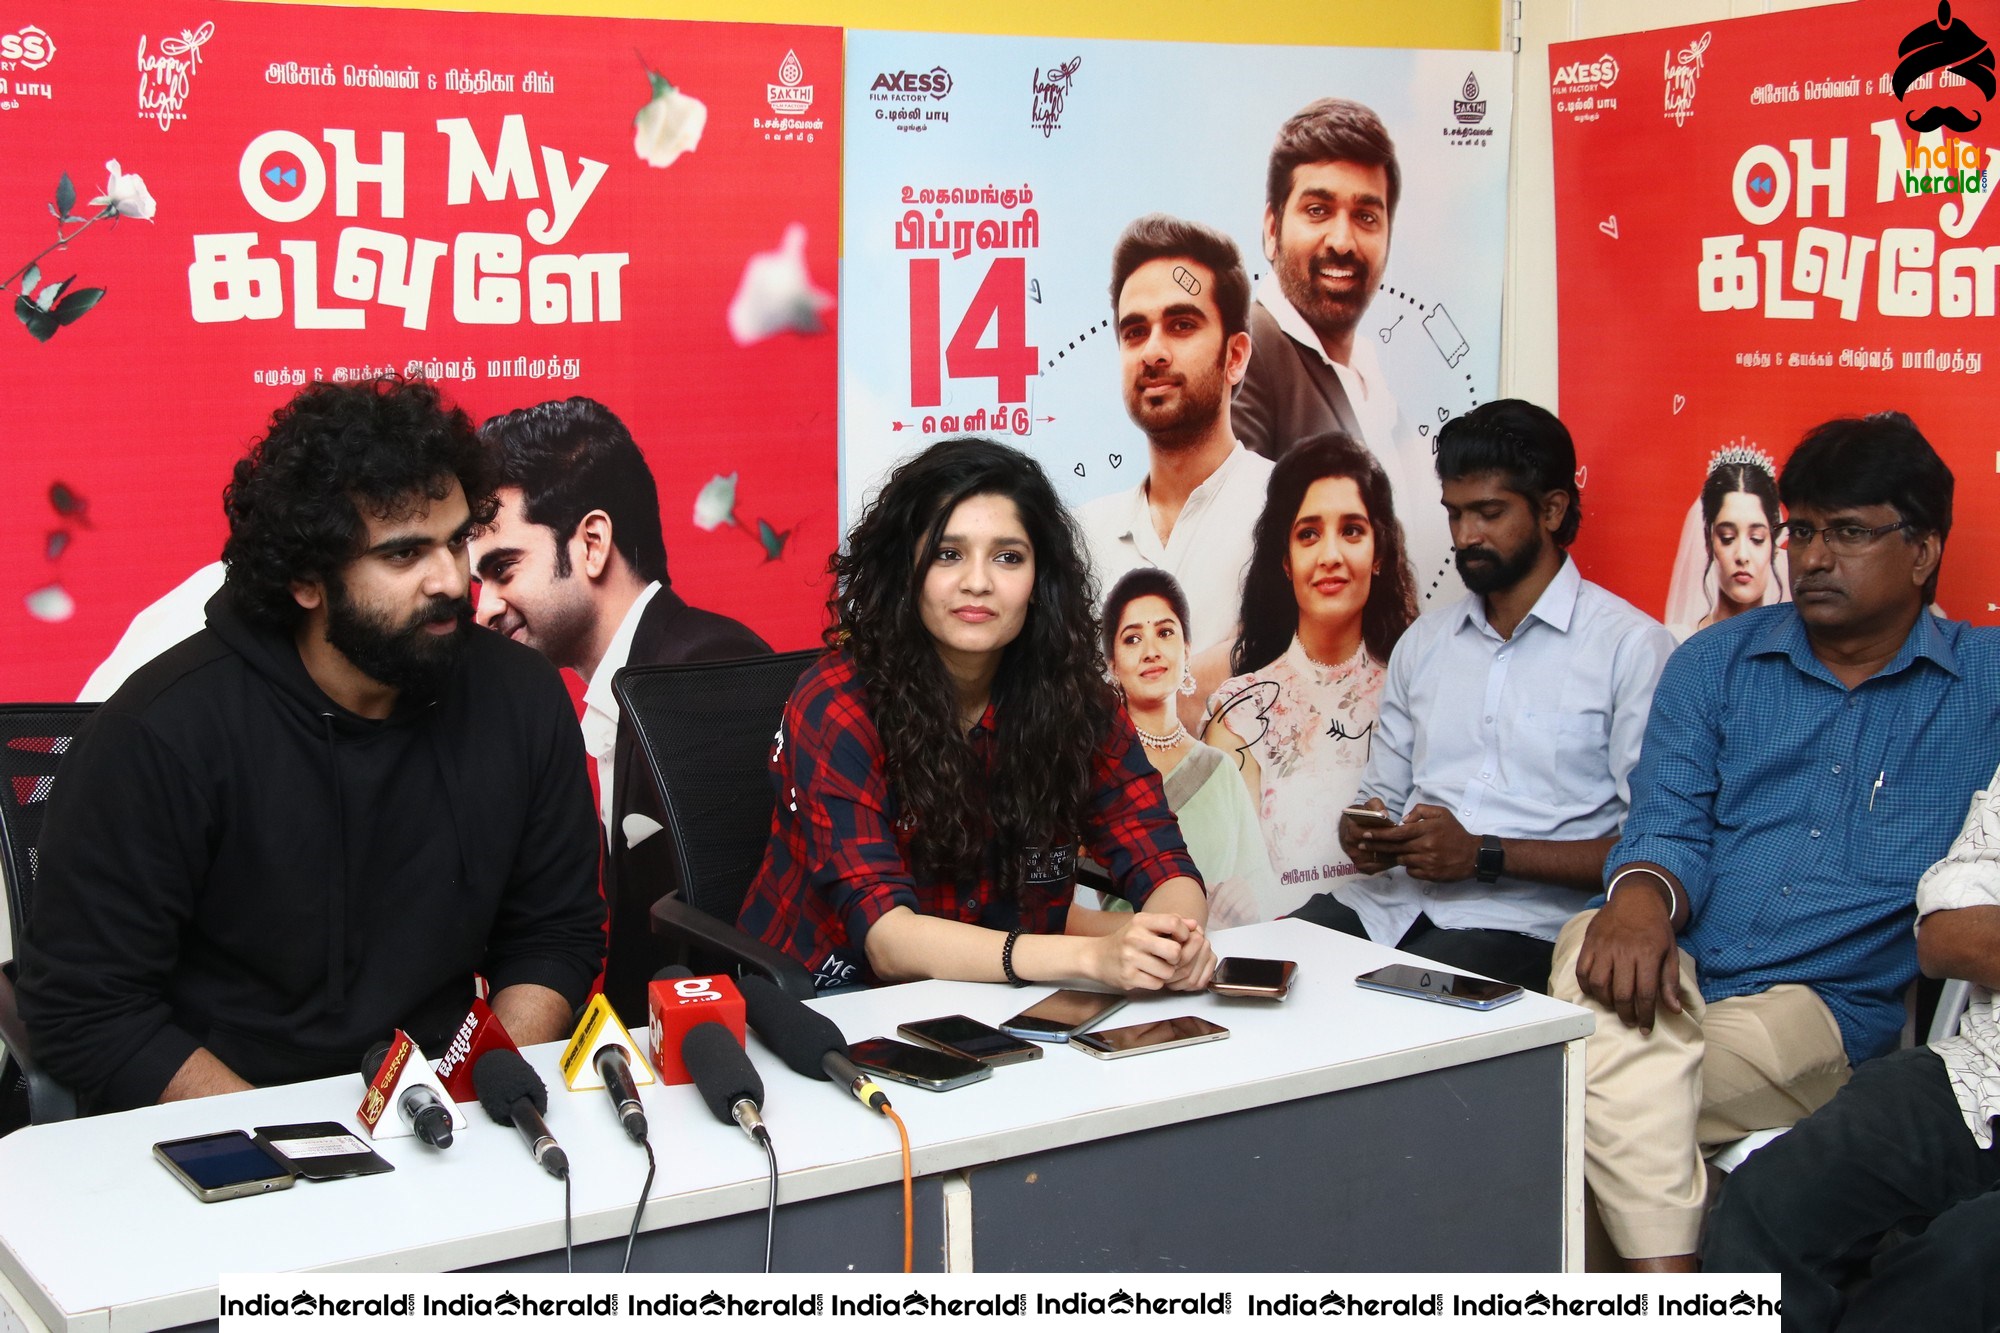 Oh My Kadavule Team Press Meet Photos at Chennai